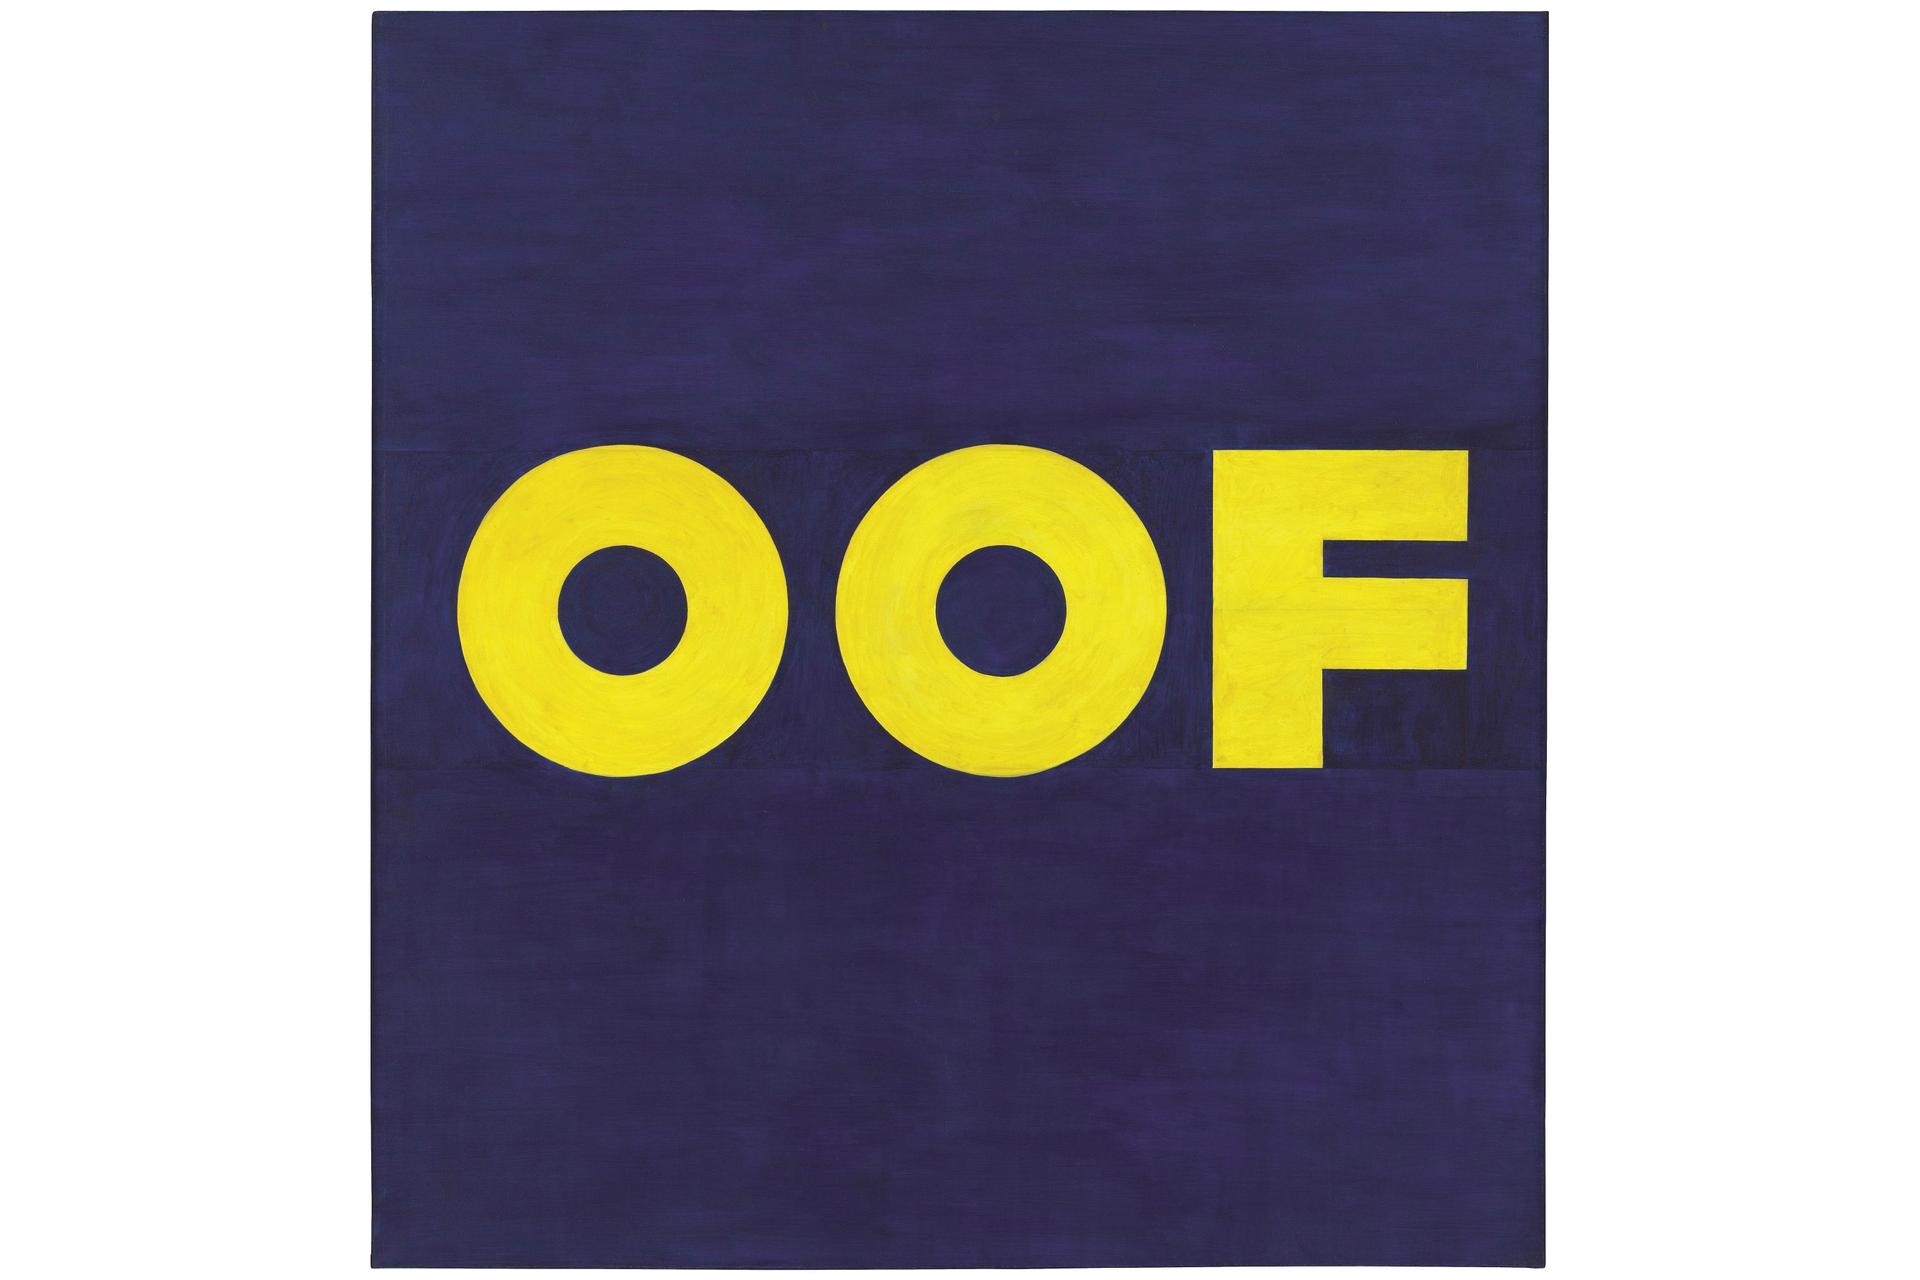 OOF artwork